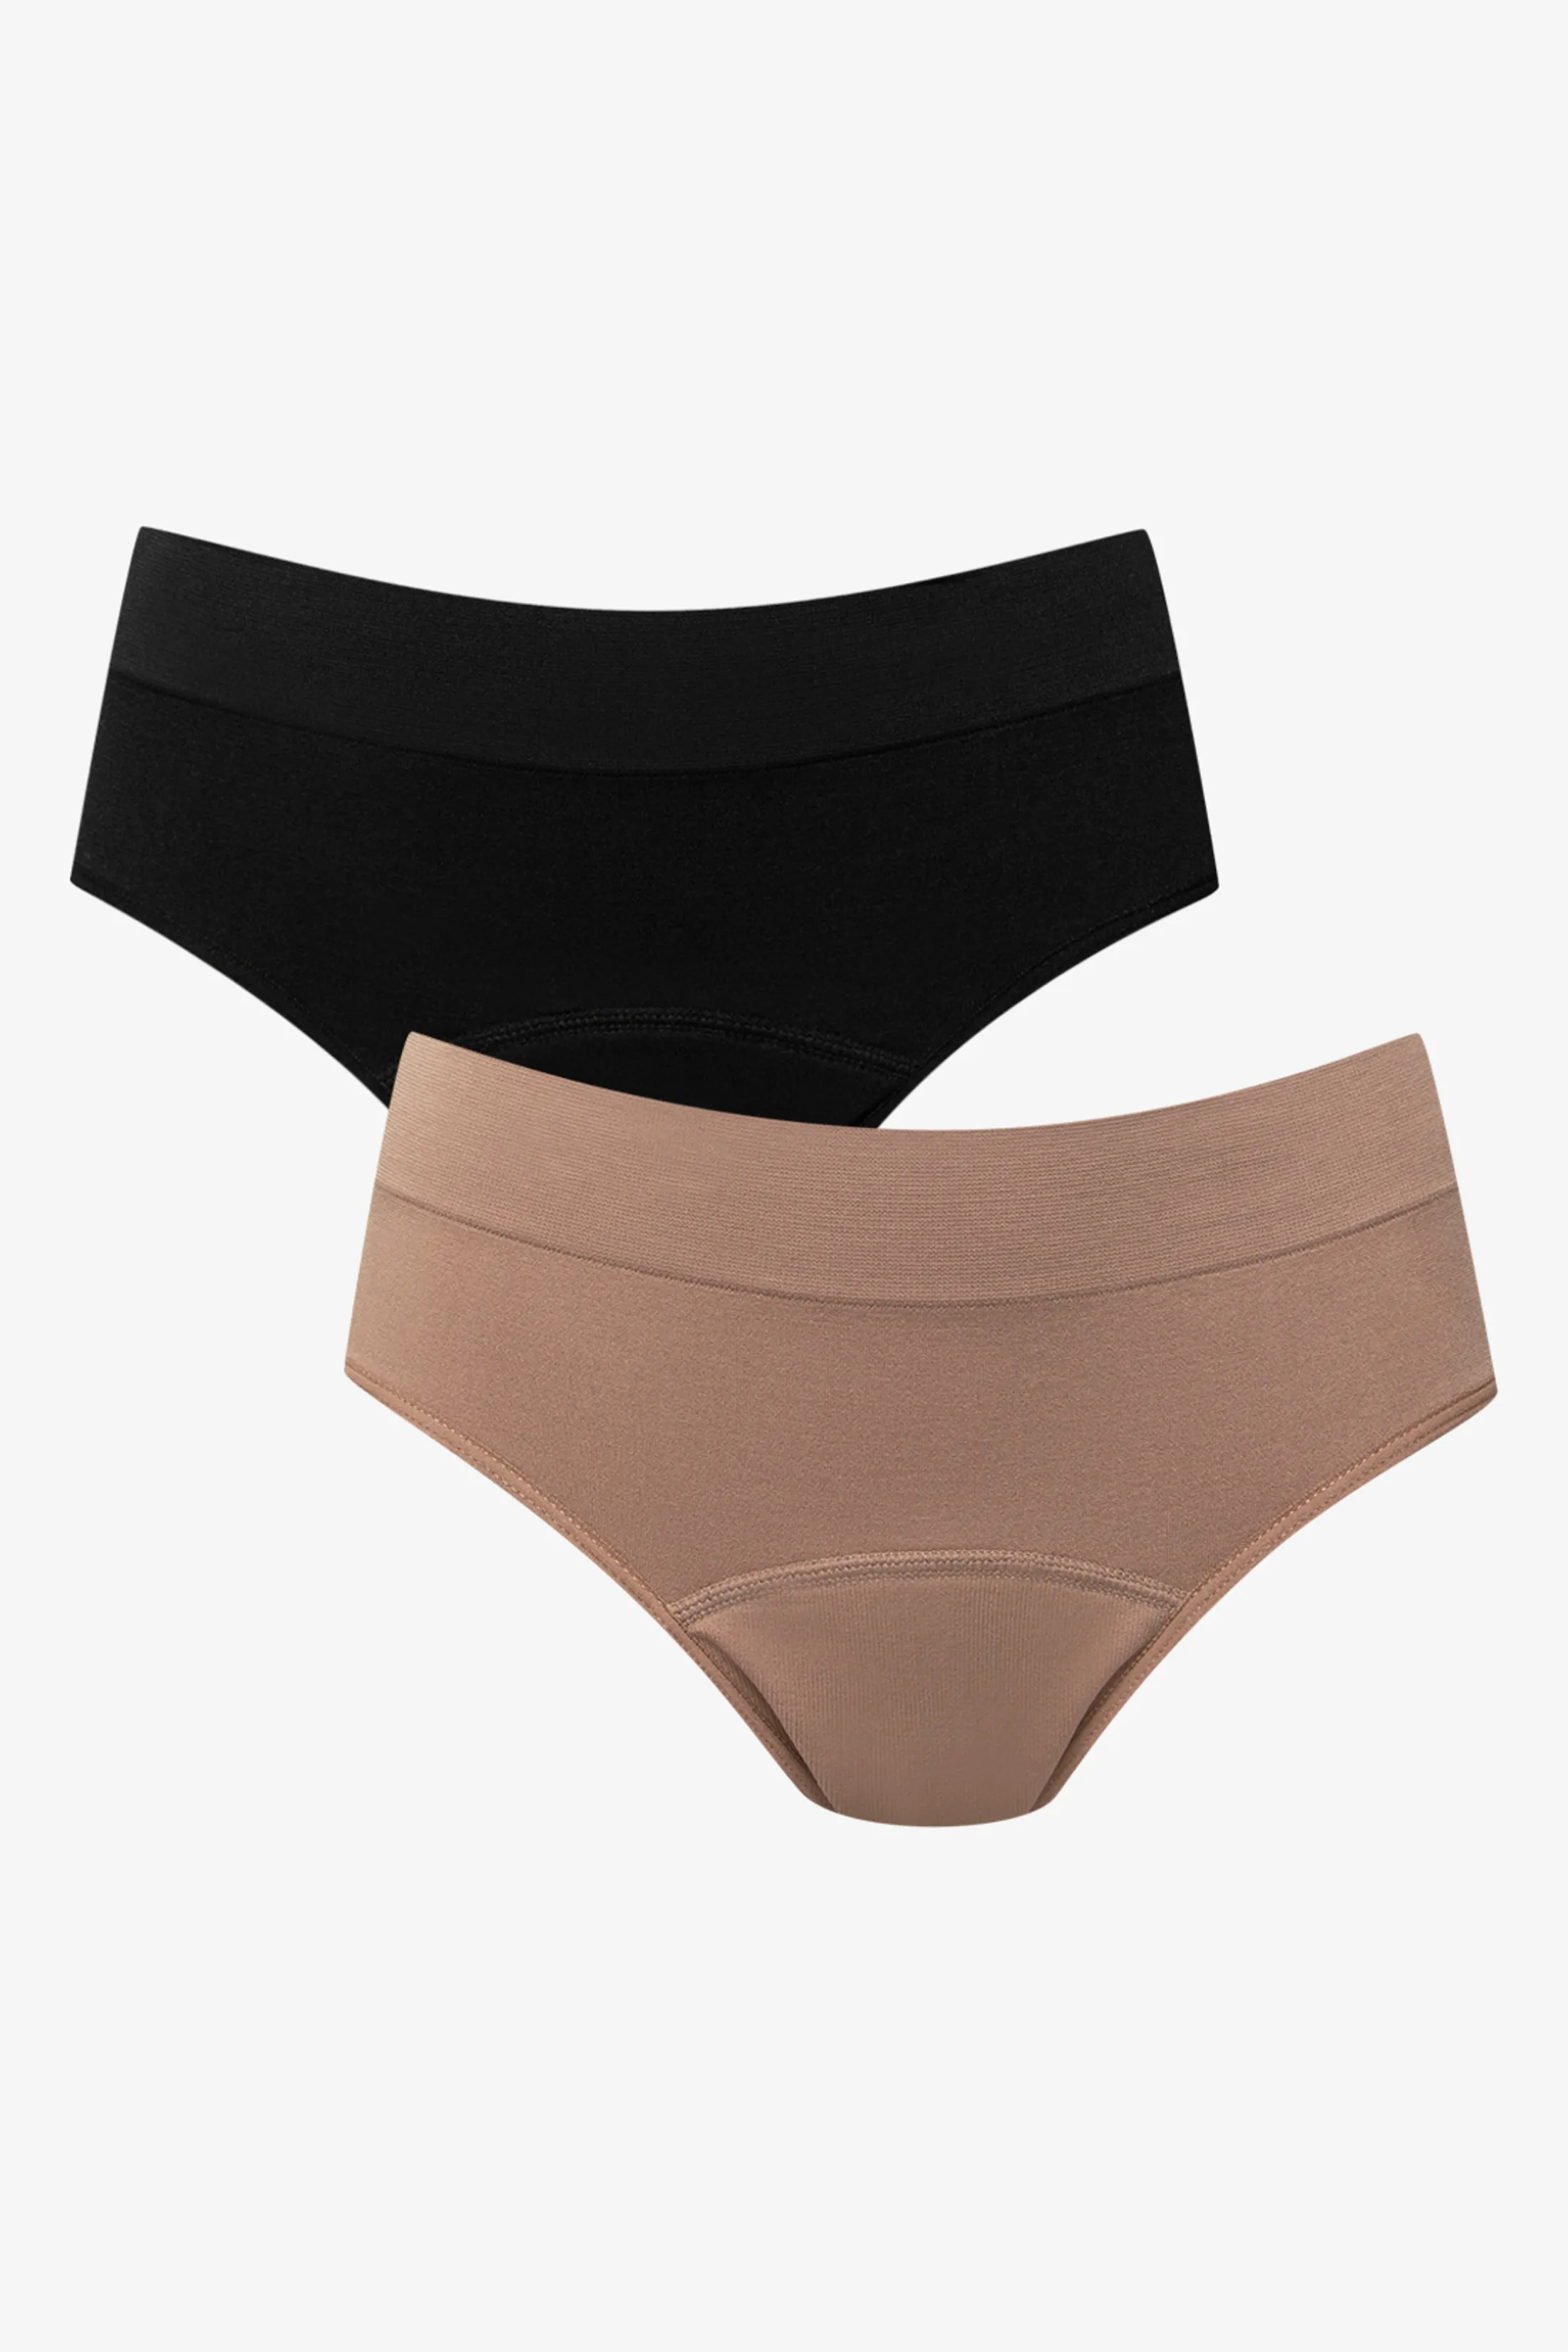 Ackermans Adds Affordable Period Panties to Growing Underwear range –  WomenStuff